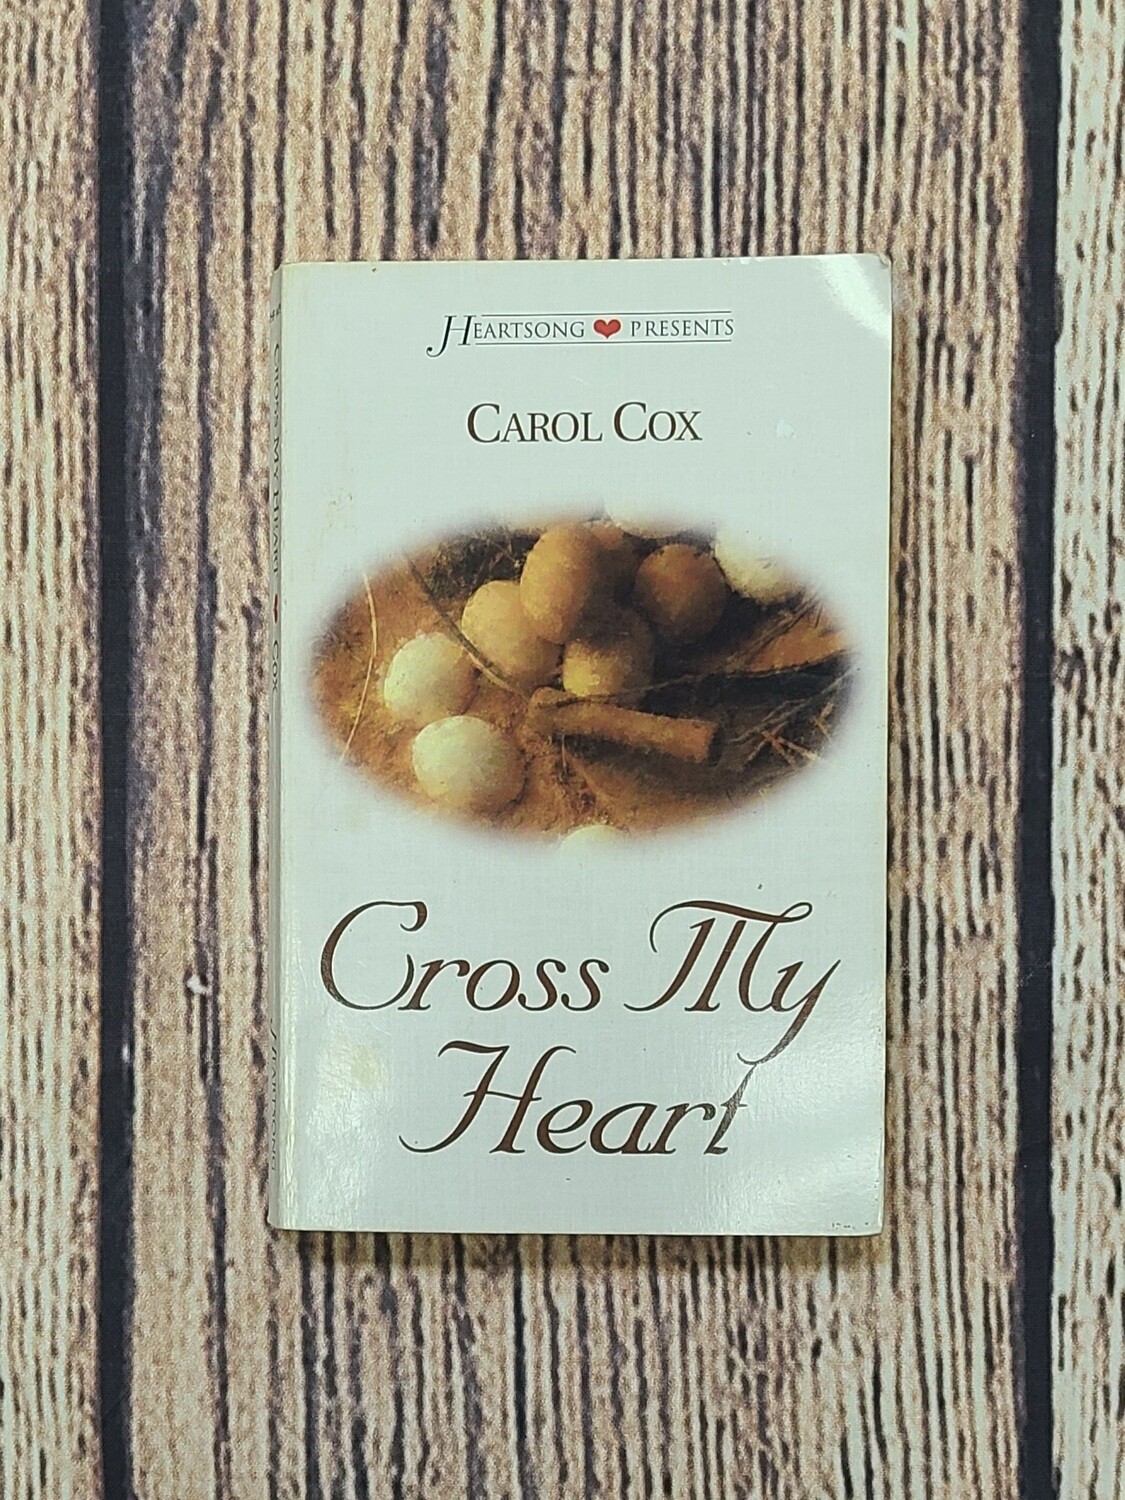 Cross My Heart by Carol Cox